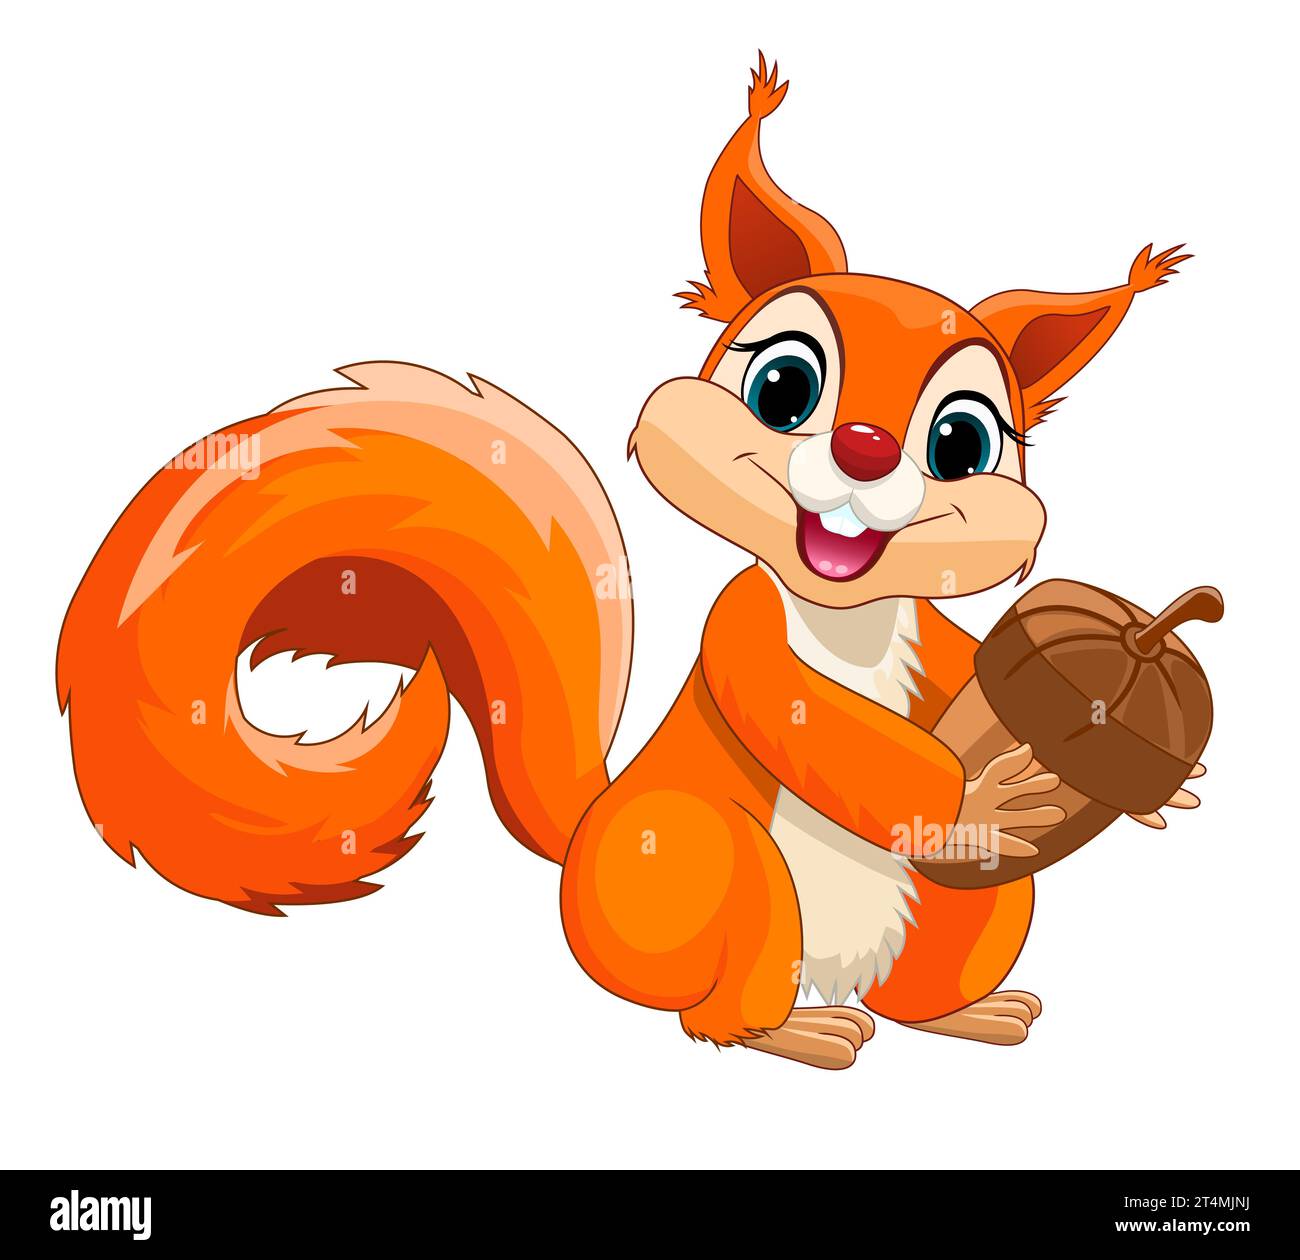 Uno scoiattolo rosso gioioso, con una coda soffice, tiene una ghianda nelle zampe. Scoiattolo su sfondo bianco. Illustrazione Vettoriale